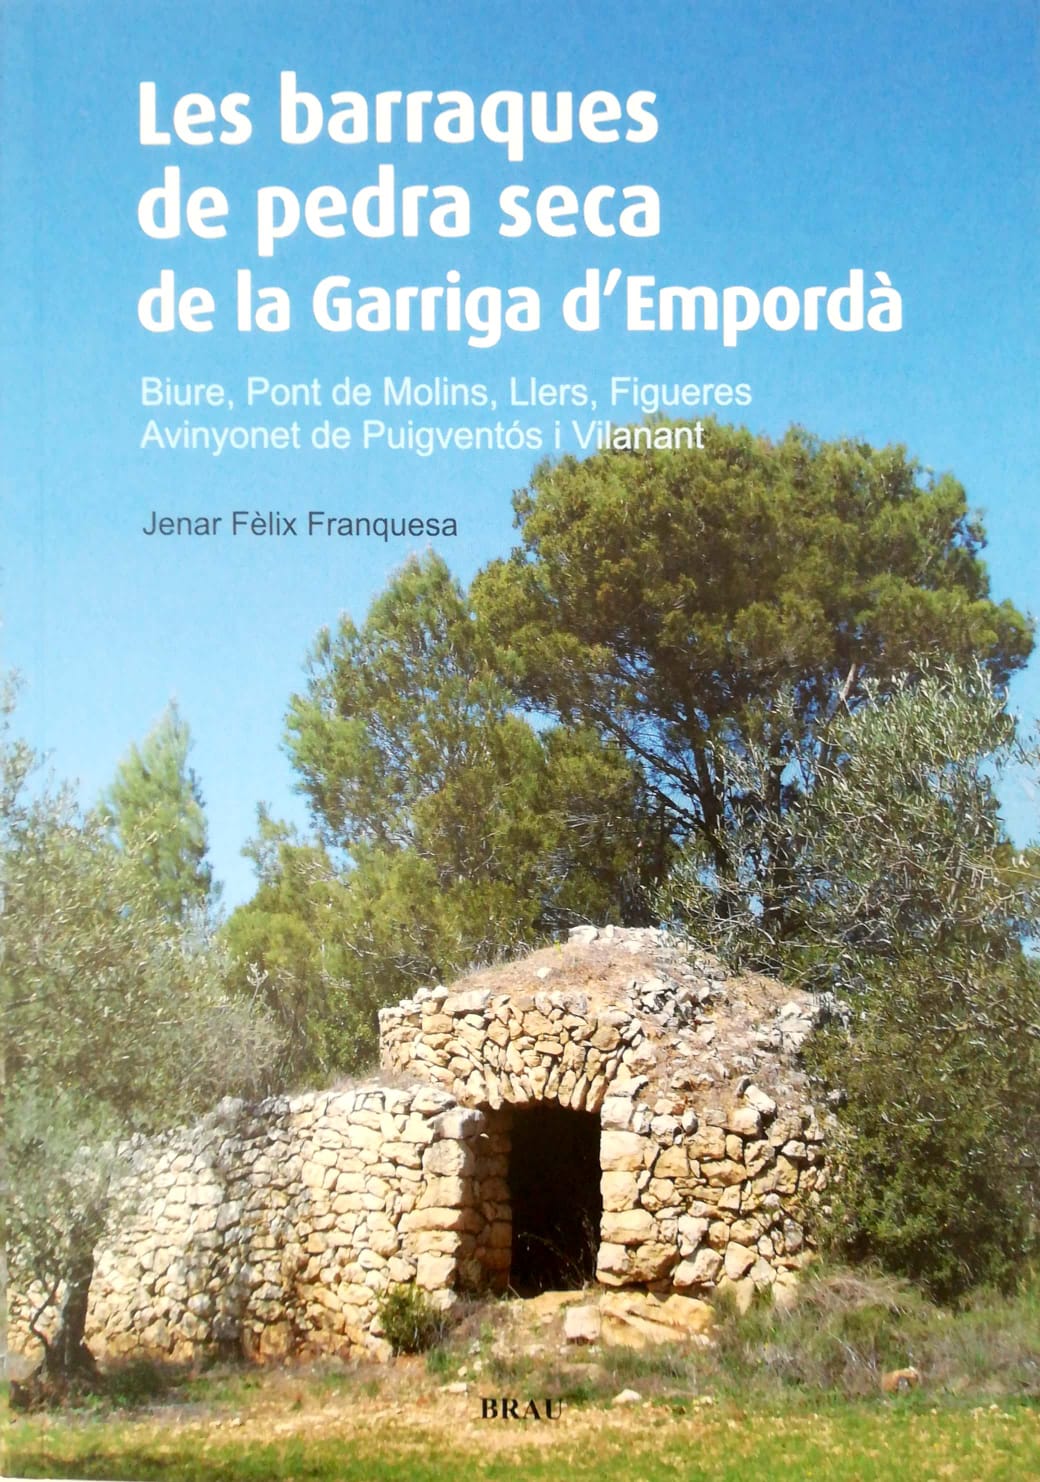 Les barraques de pedra seca de la Garriga d'Empordà. Biure, Pont de Molins, Llers, Figueres, Avinyonet de Puigventós i Vianant.